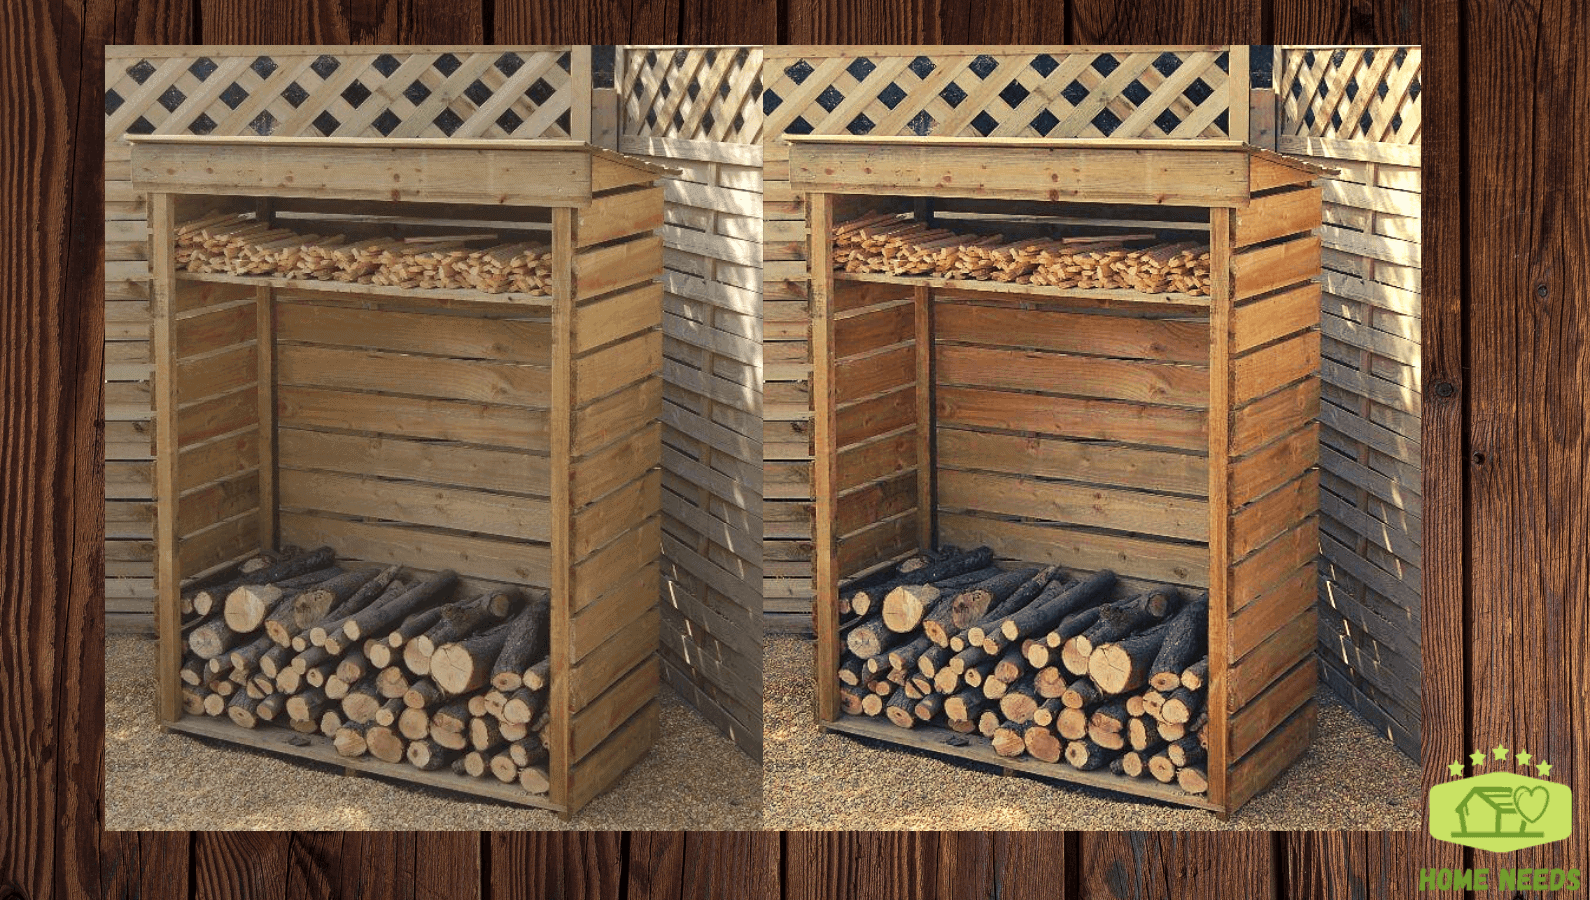 Wooden Pallet Storage Space